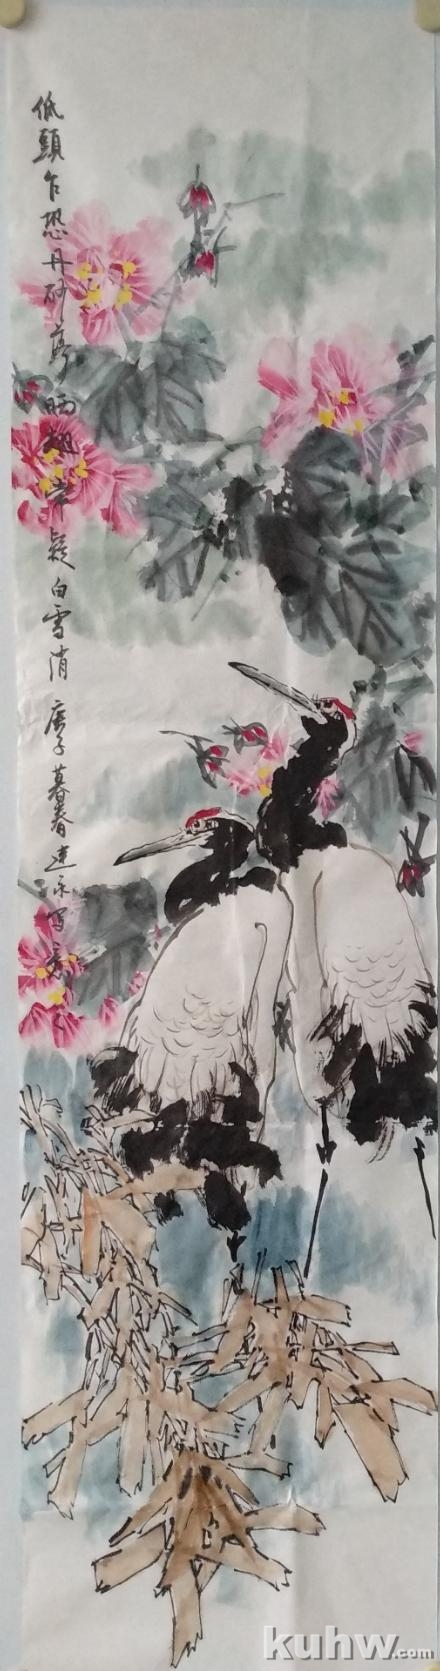 《低头乍恐丹砂落》——仙鹤芙蓉花竹枝的画法